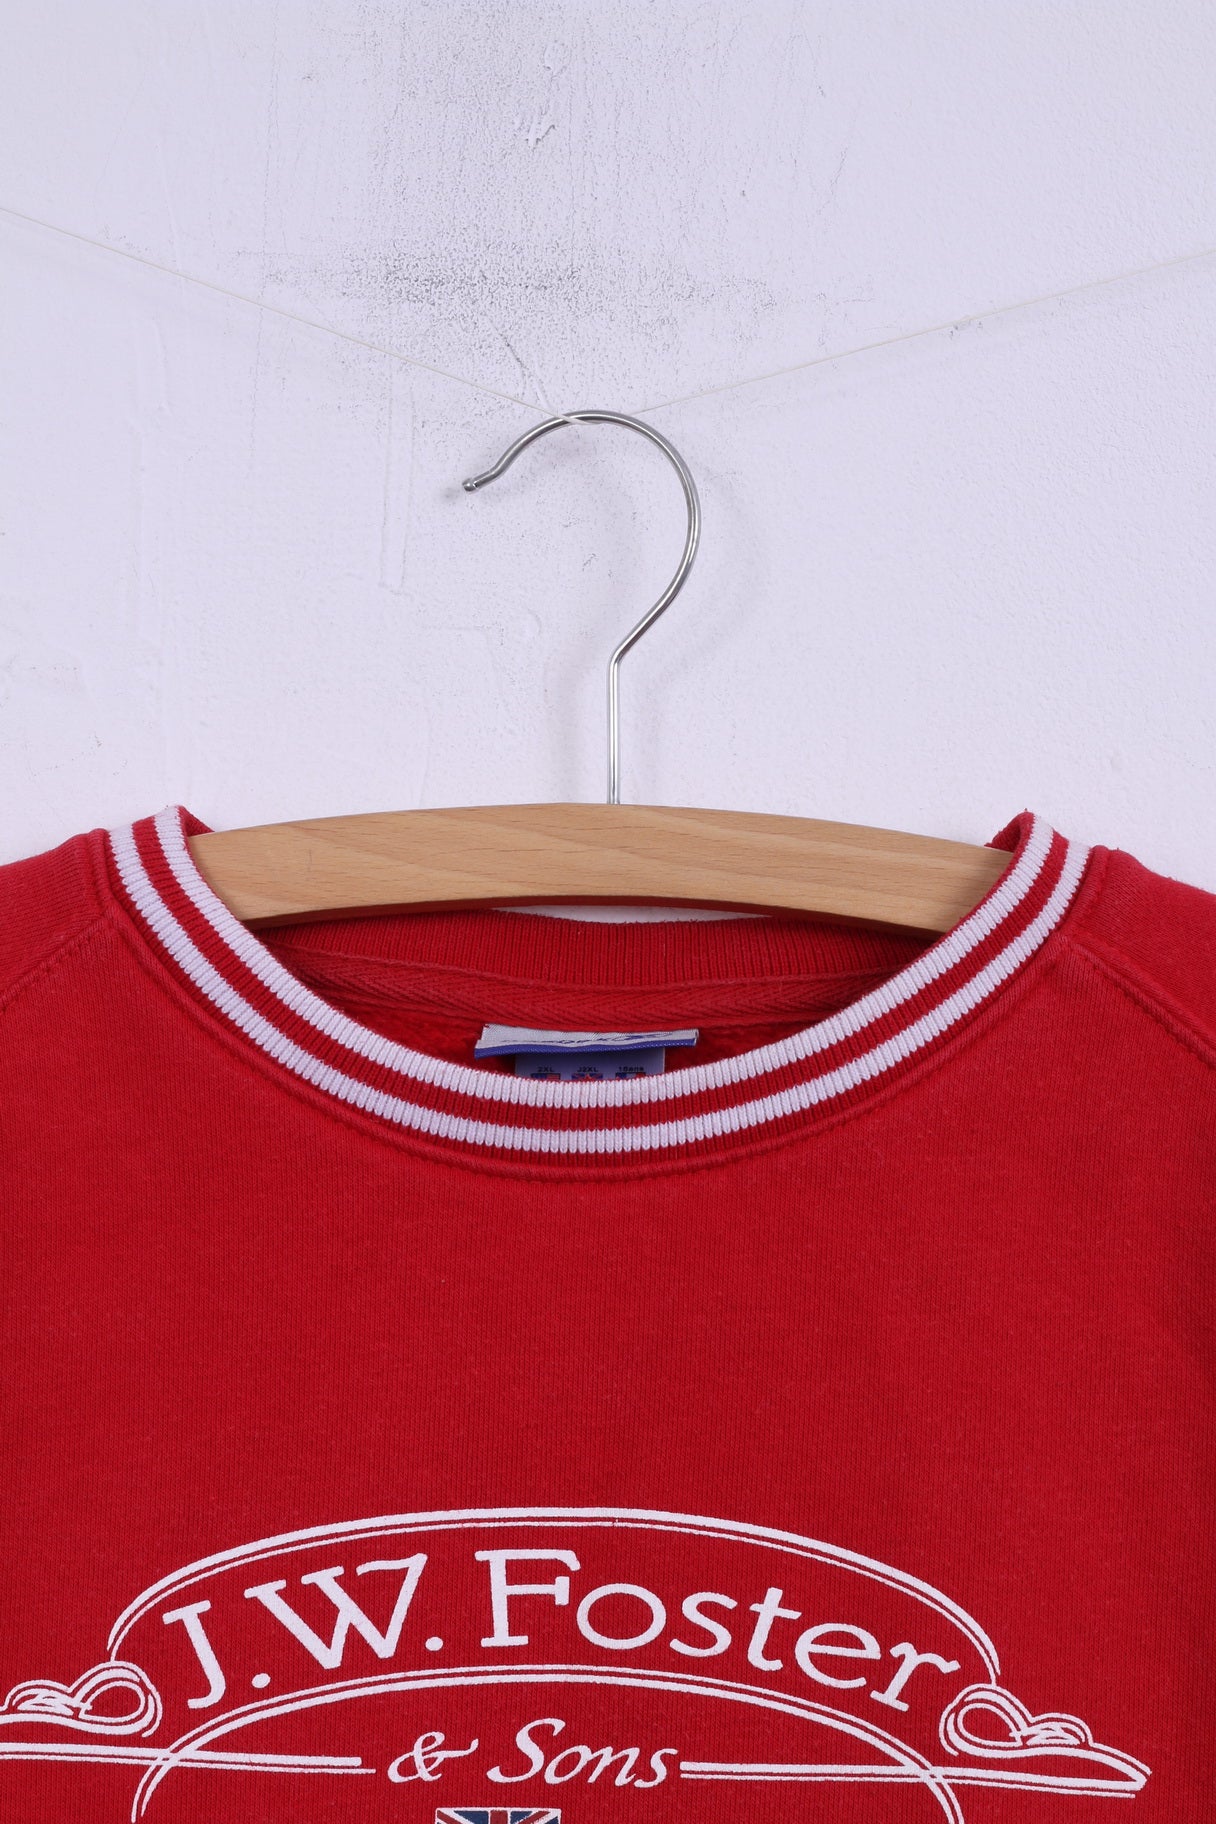 Reebok Boys 176 14 Age Sweatshirt Red Sportswear Top Cotton J.W.Foster & Sons